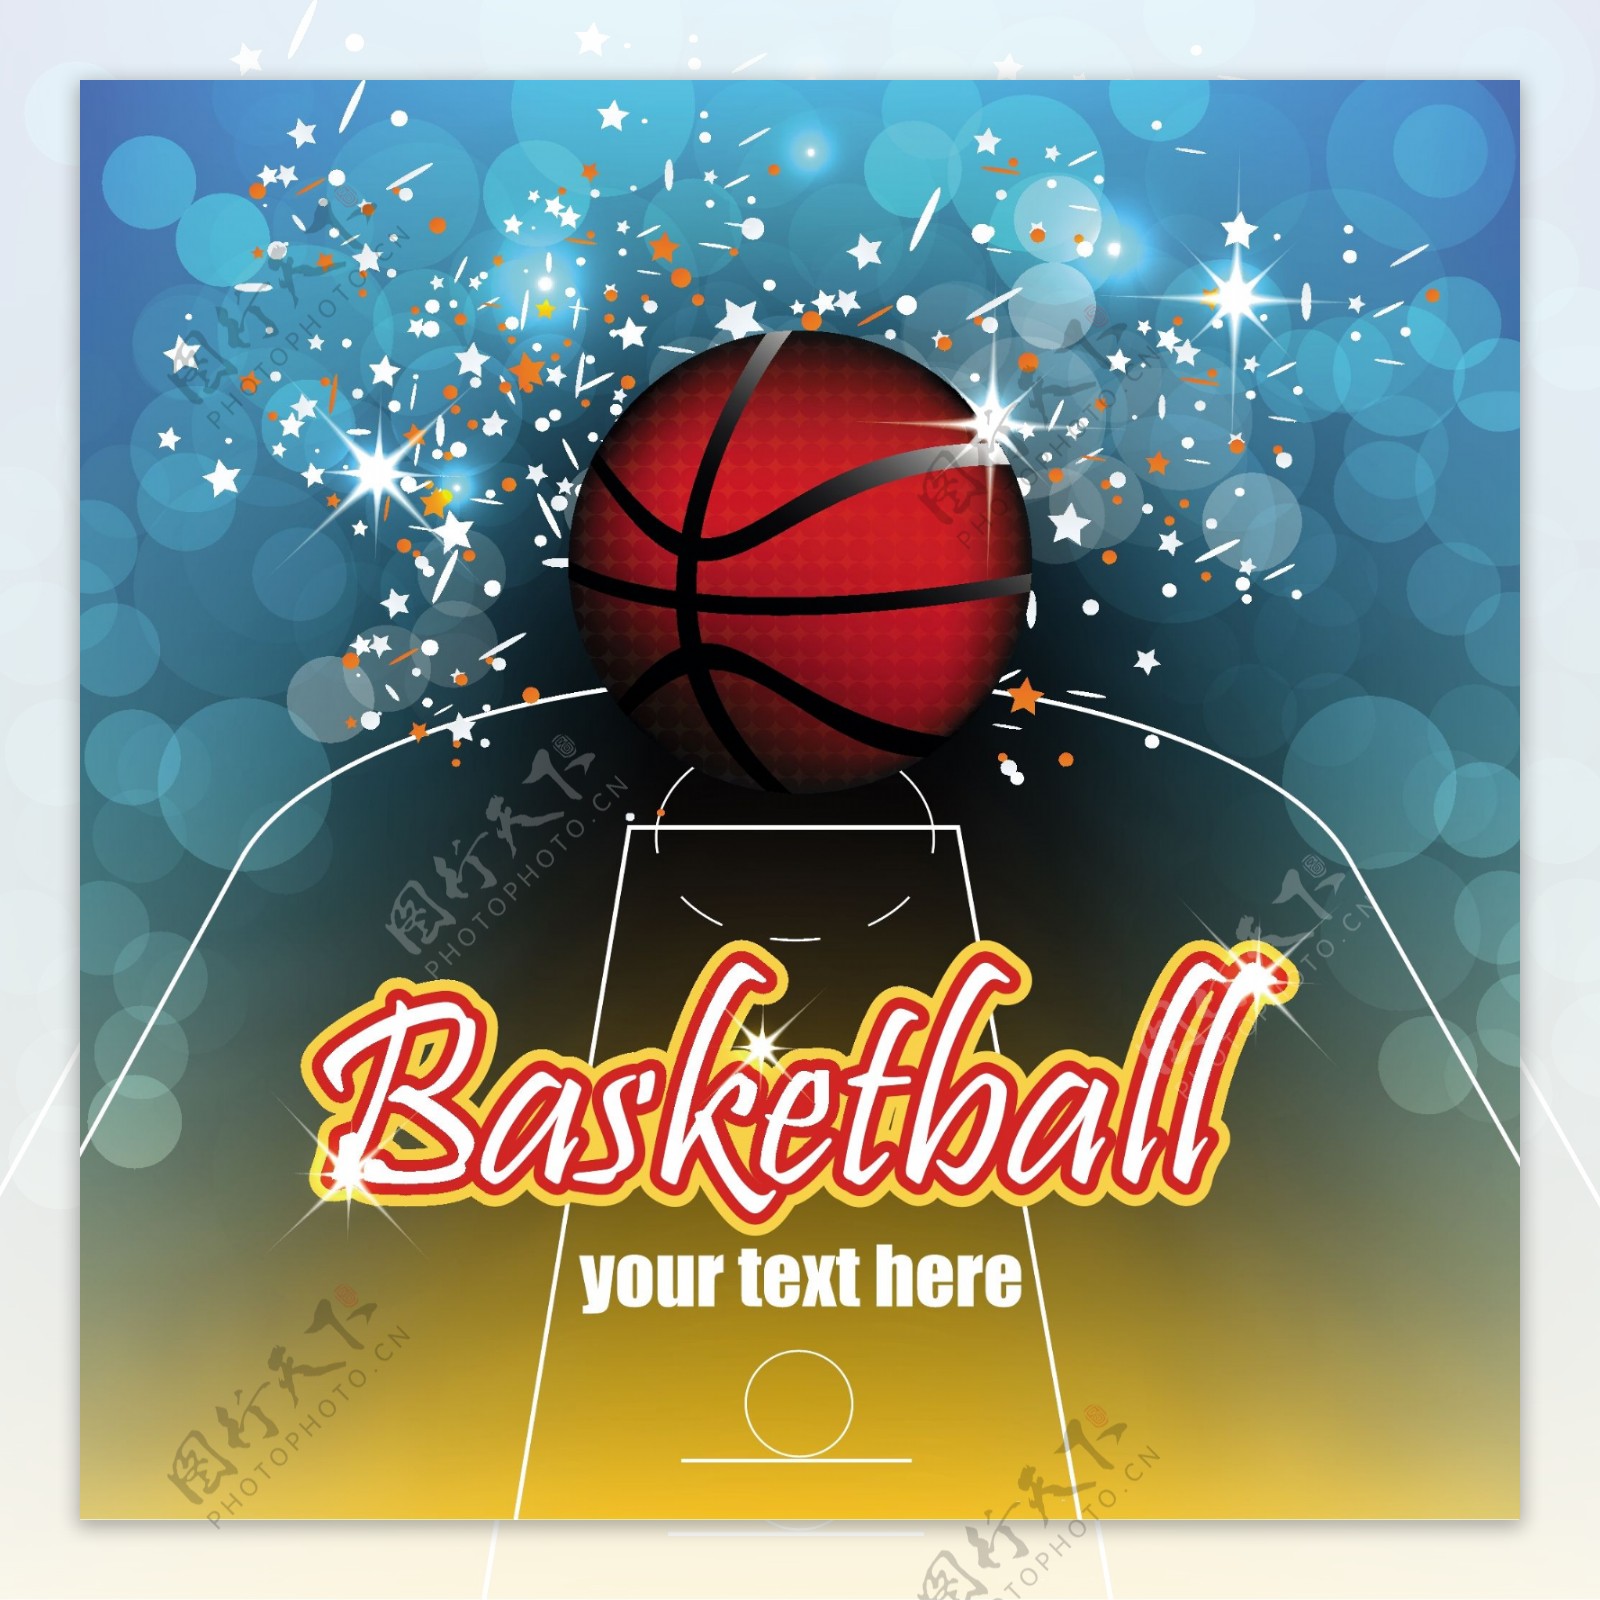 创意篮球海报矢量素材图片